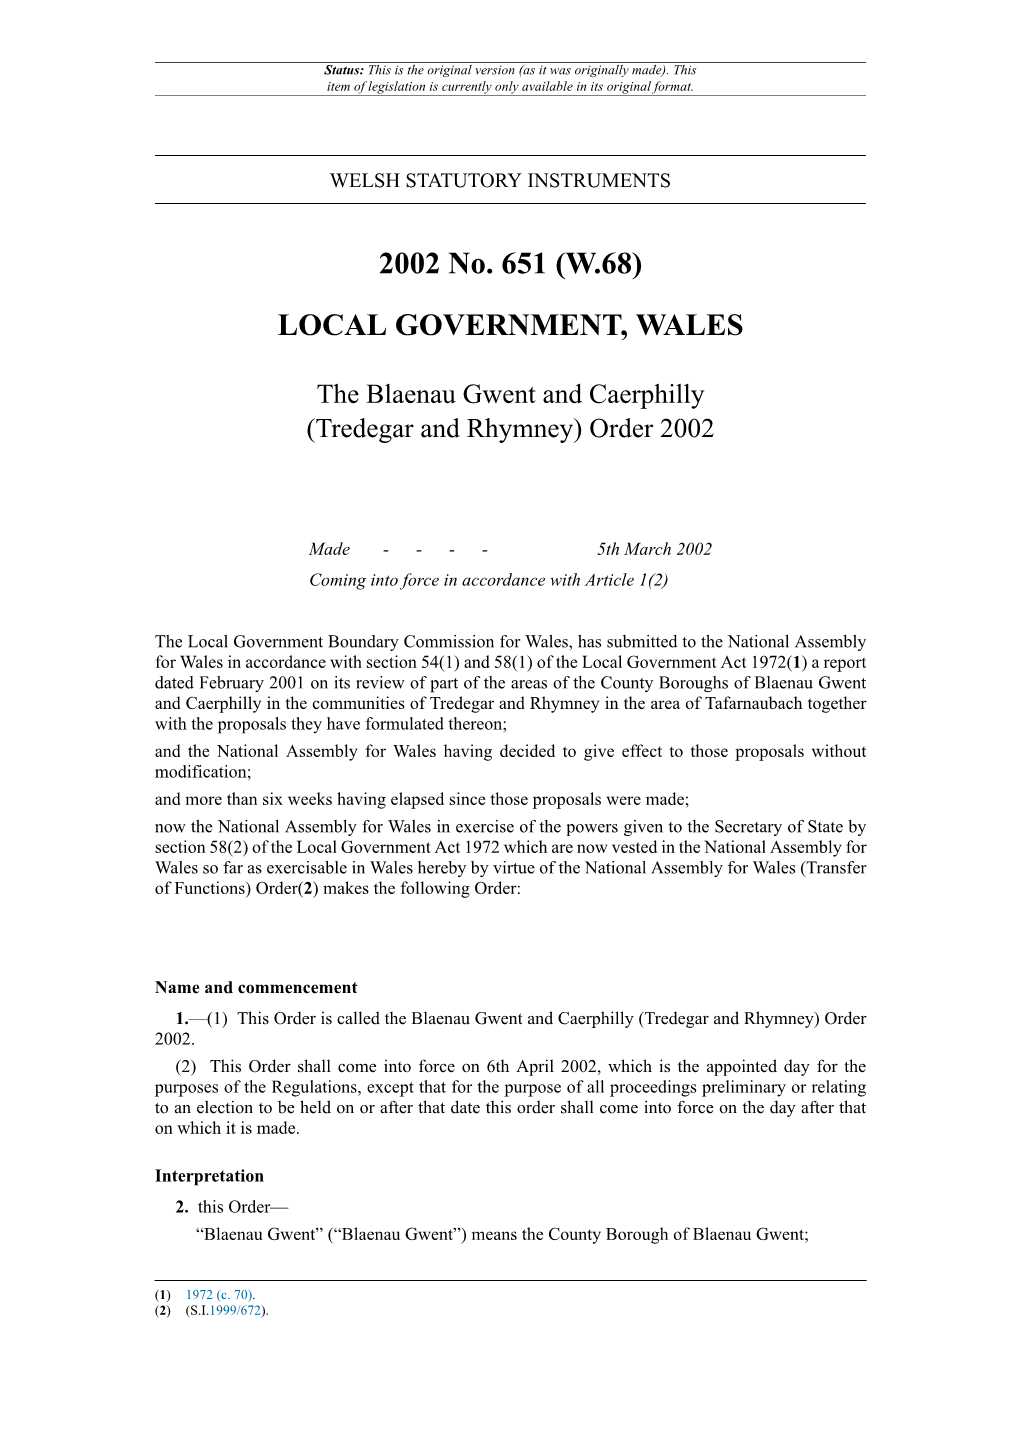 The Blaenau Gwent and Caerphilly (Tredegar and Rhymney) Order 2002